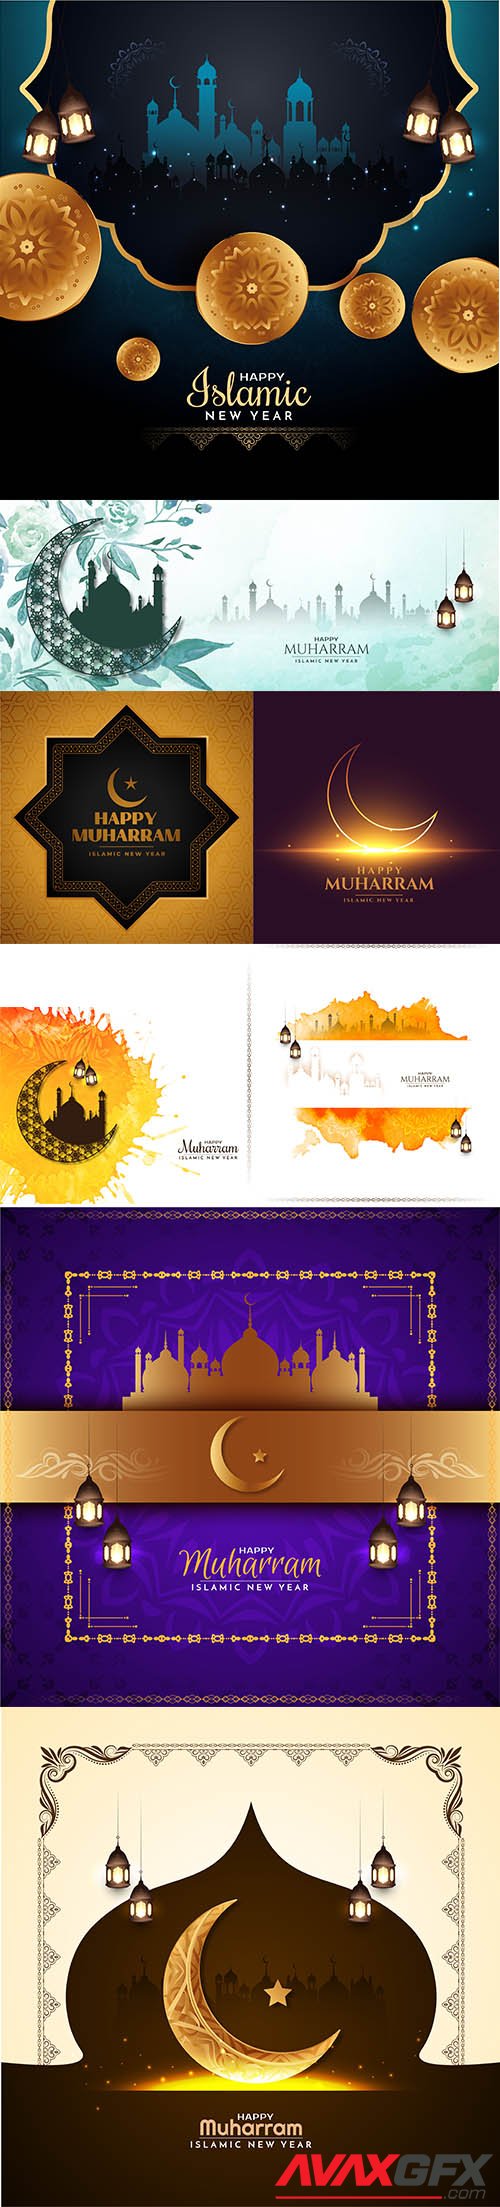 Happy muharram islamic new year religious greeting banner